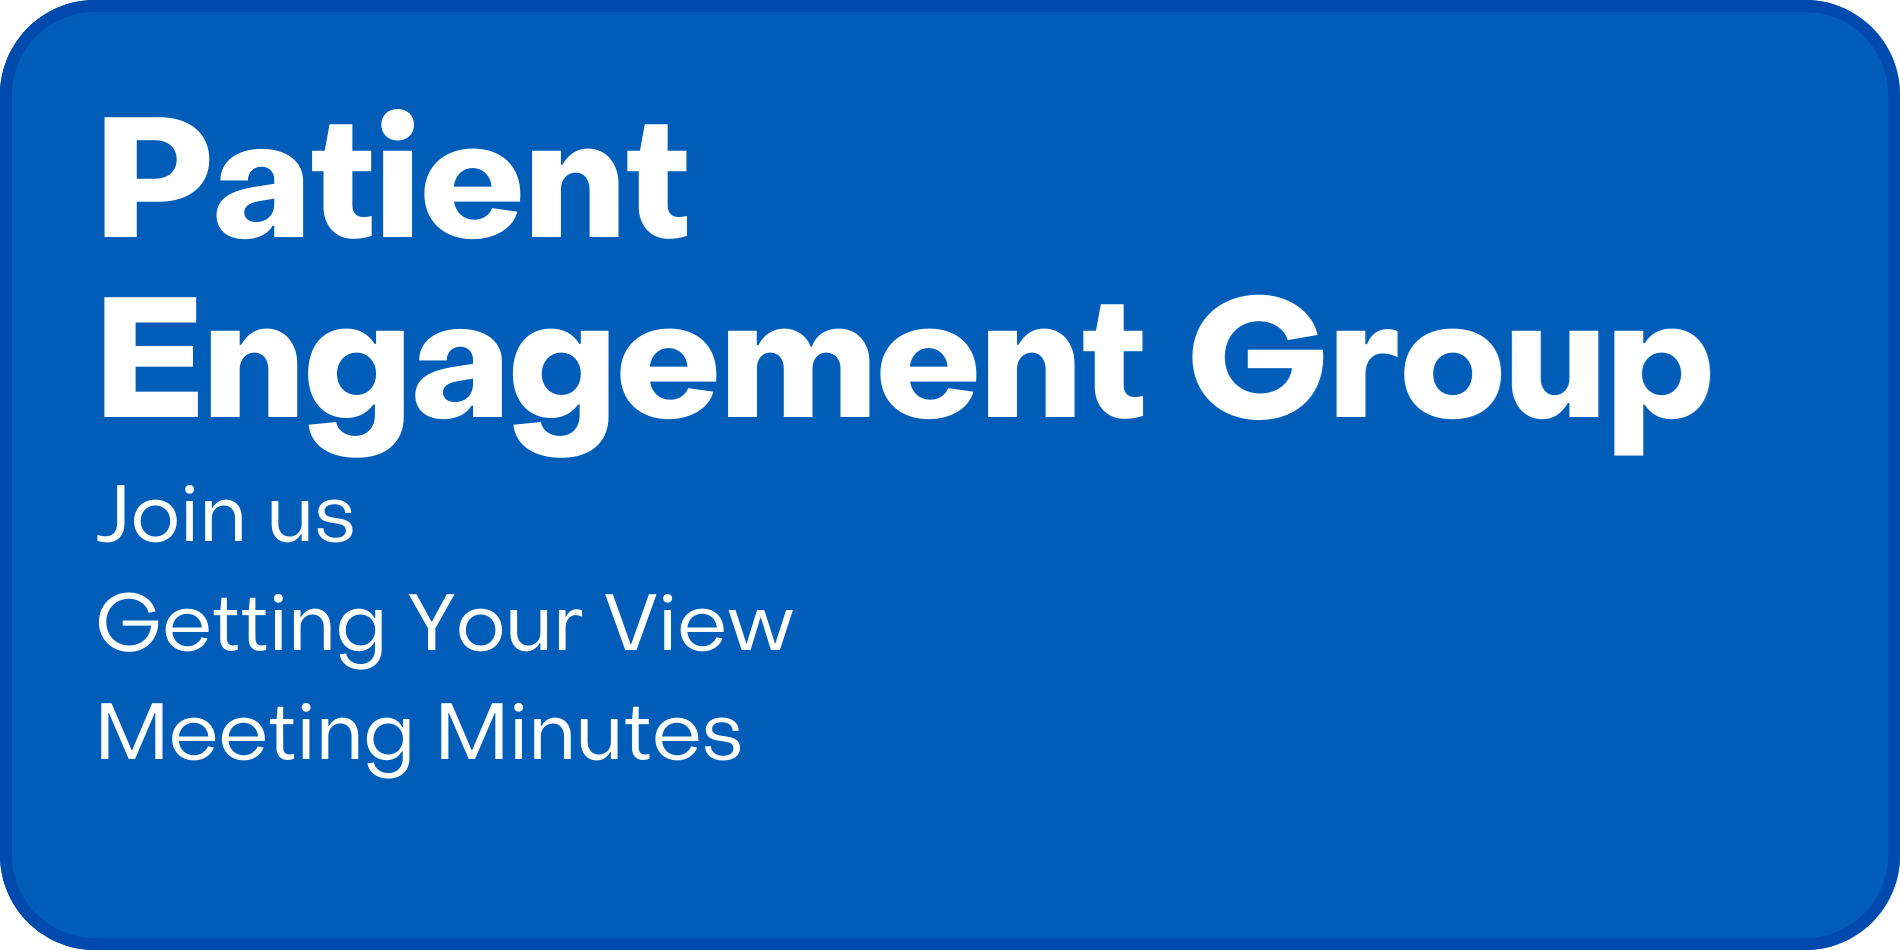 Patient Engagement Group